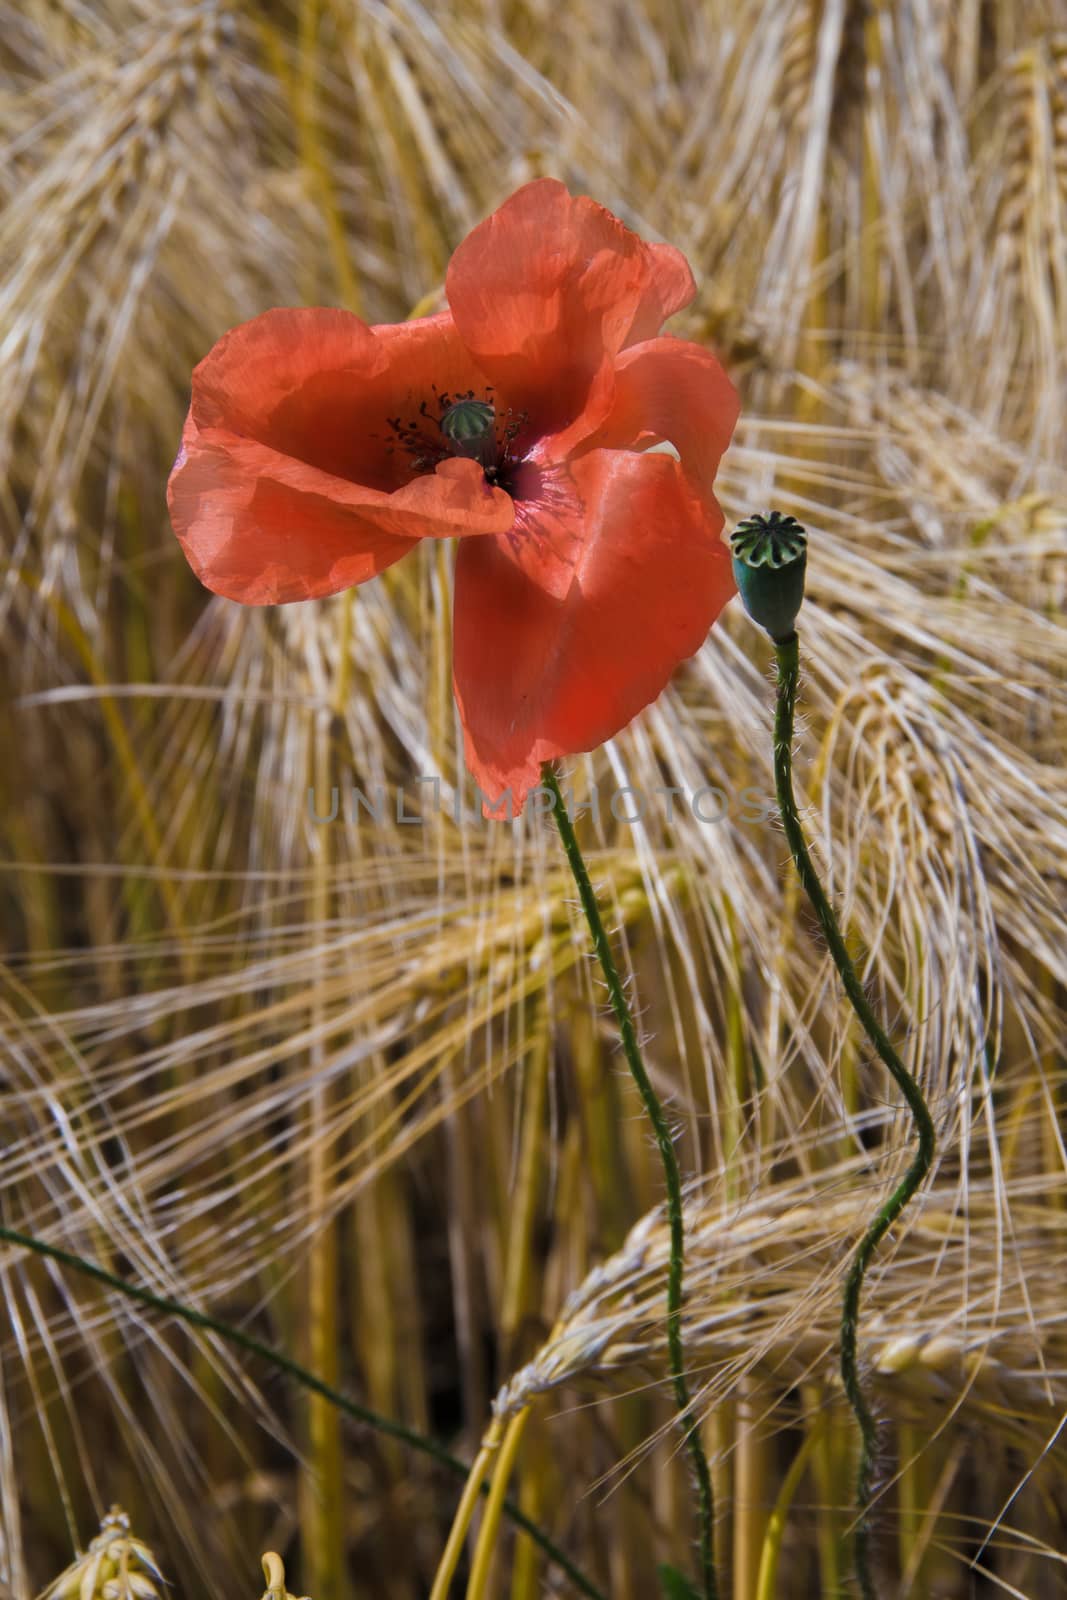 Poppy in rye field by rainfallsup